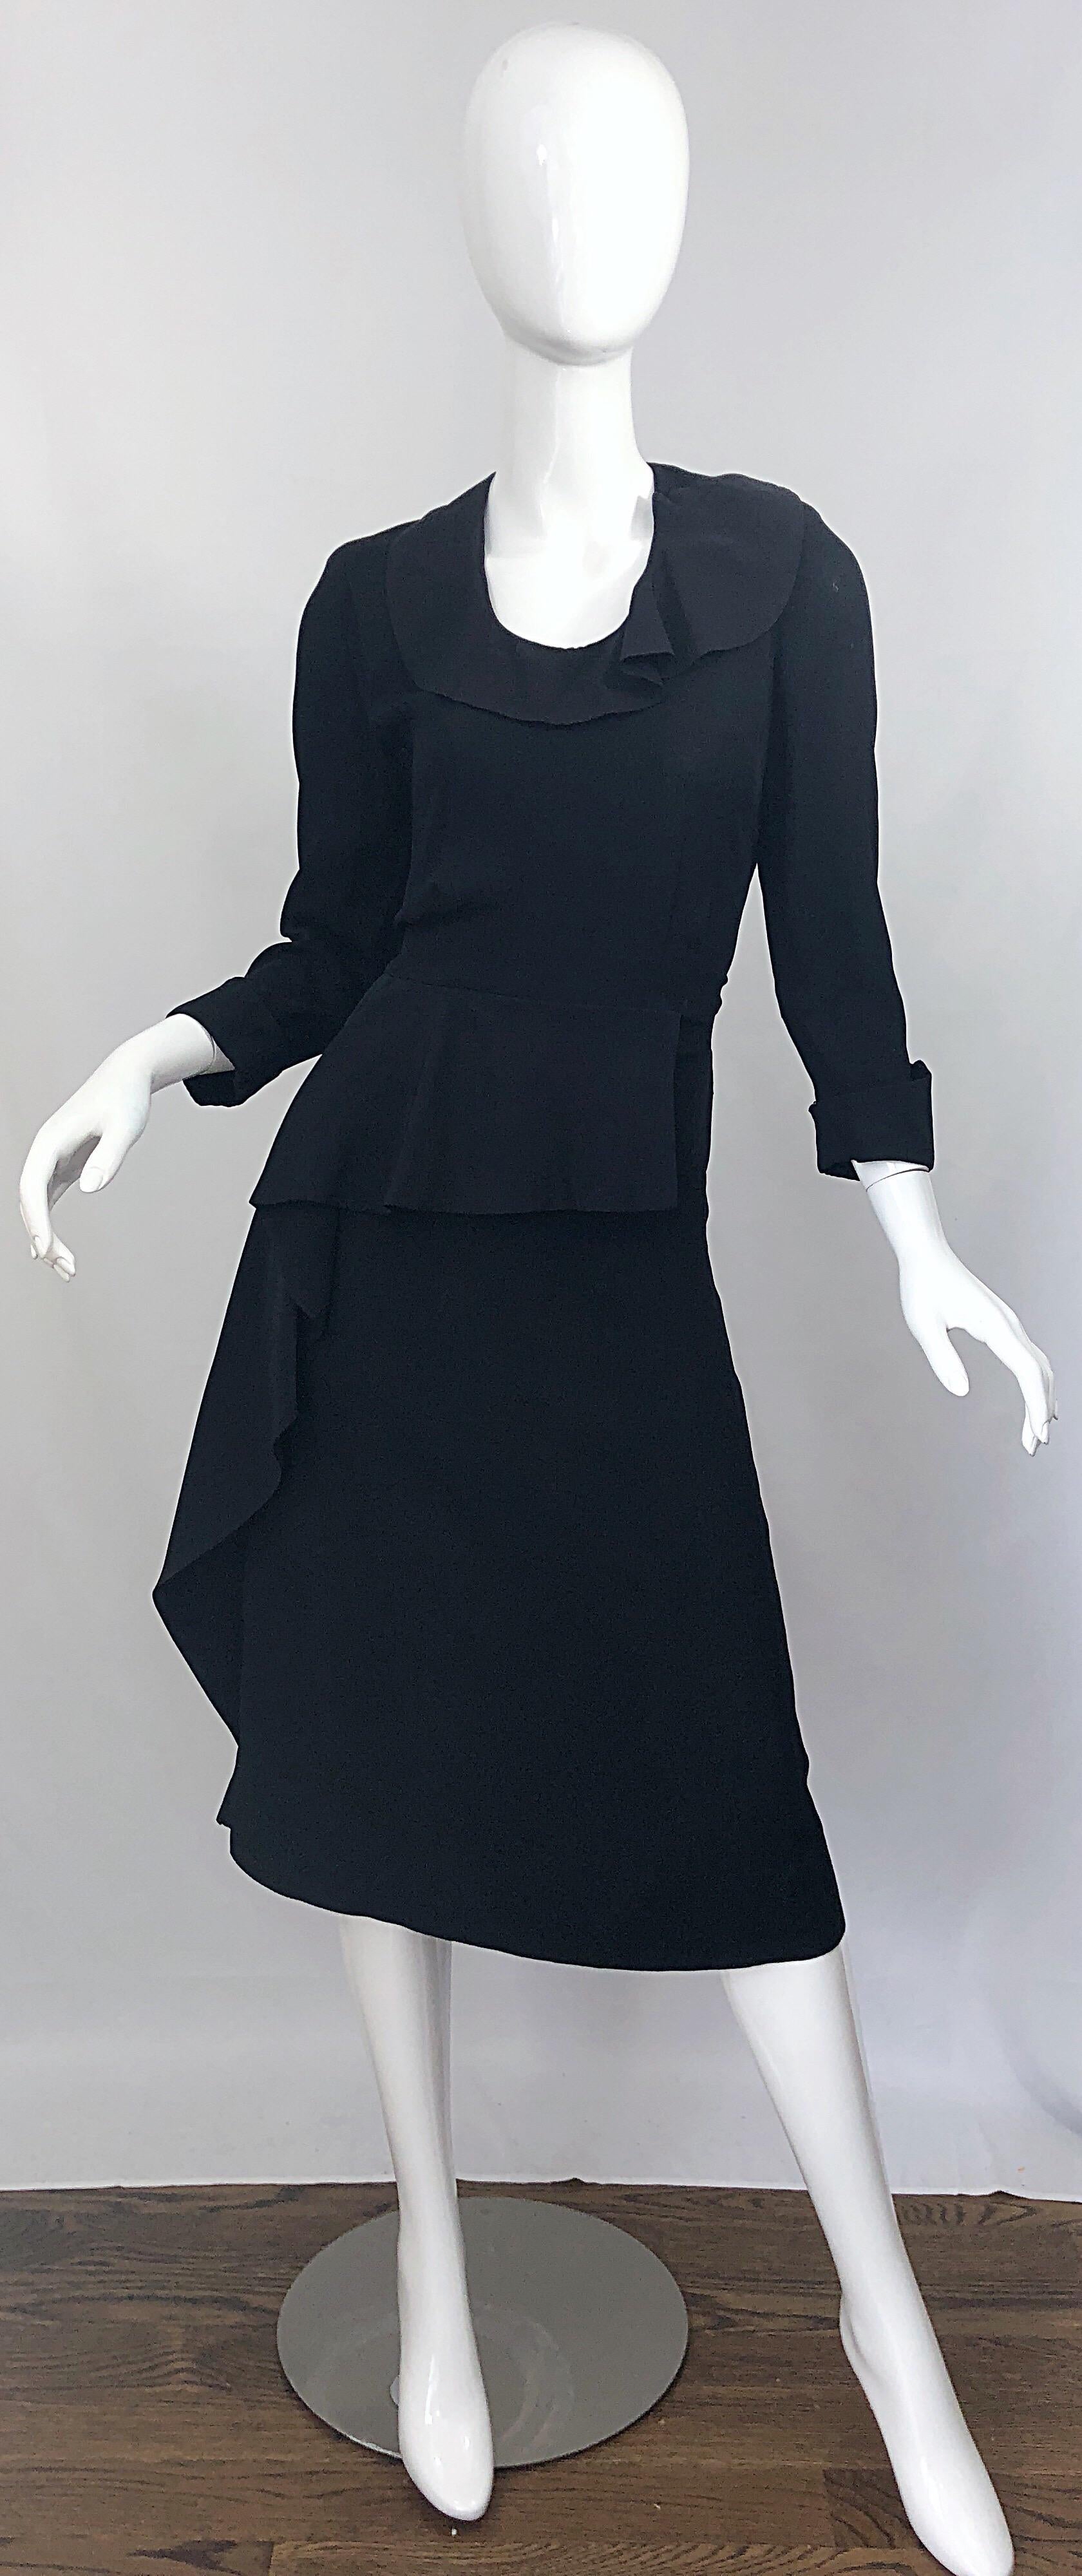 Chic 1940s schwarzer Krepp lange Ärmel Vintage 40s asymmetrische Schößchen Kleid! Das perfekte kleine Schwarze, das Klasse und Stil ausstrahlt. Schmeichelhaftes seitliches Schößchen-Detail, mit Rüsche an Taille und Kragen. Metallreißverschluss an